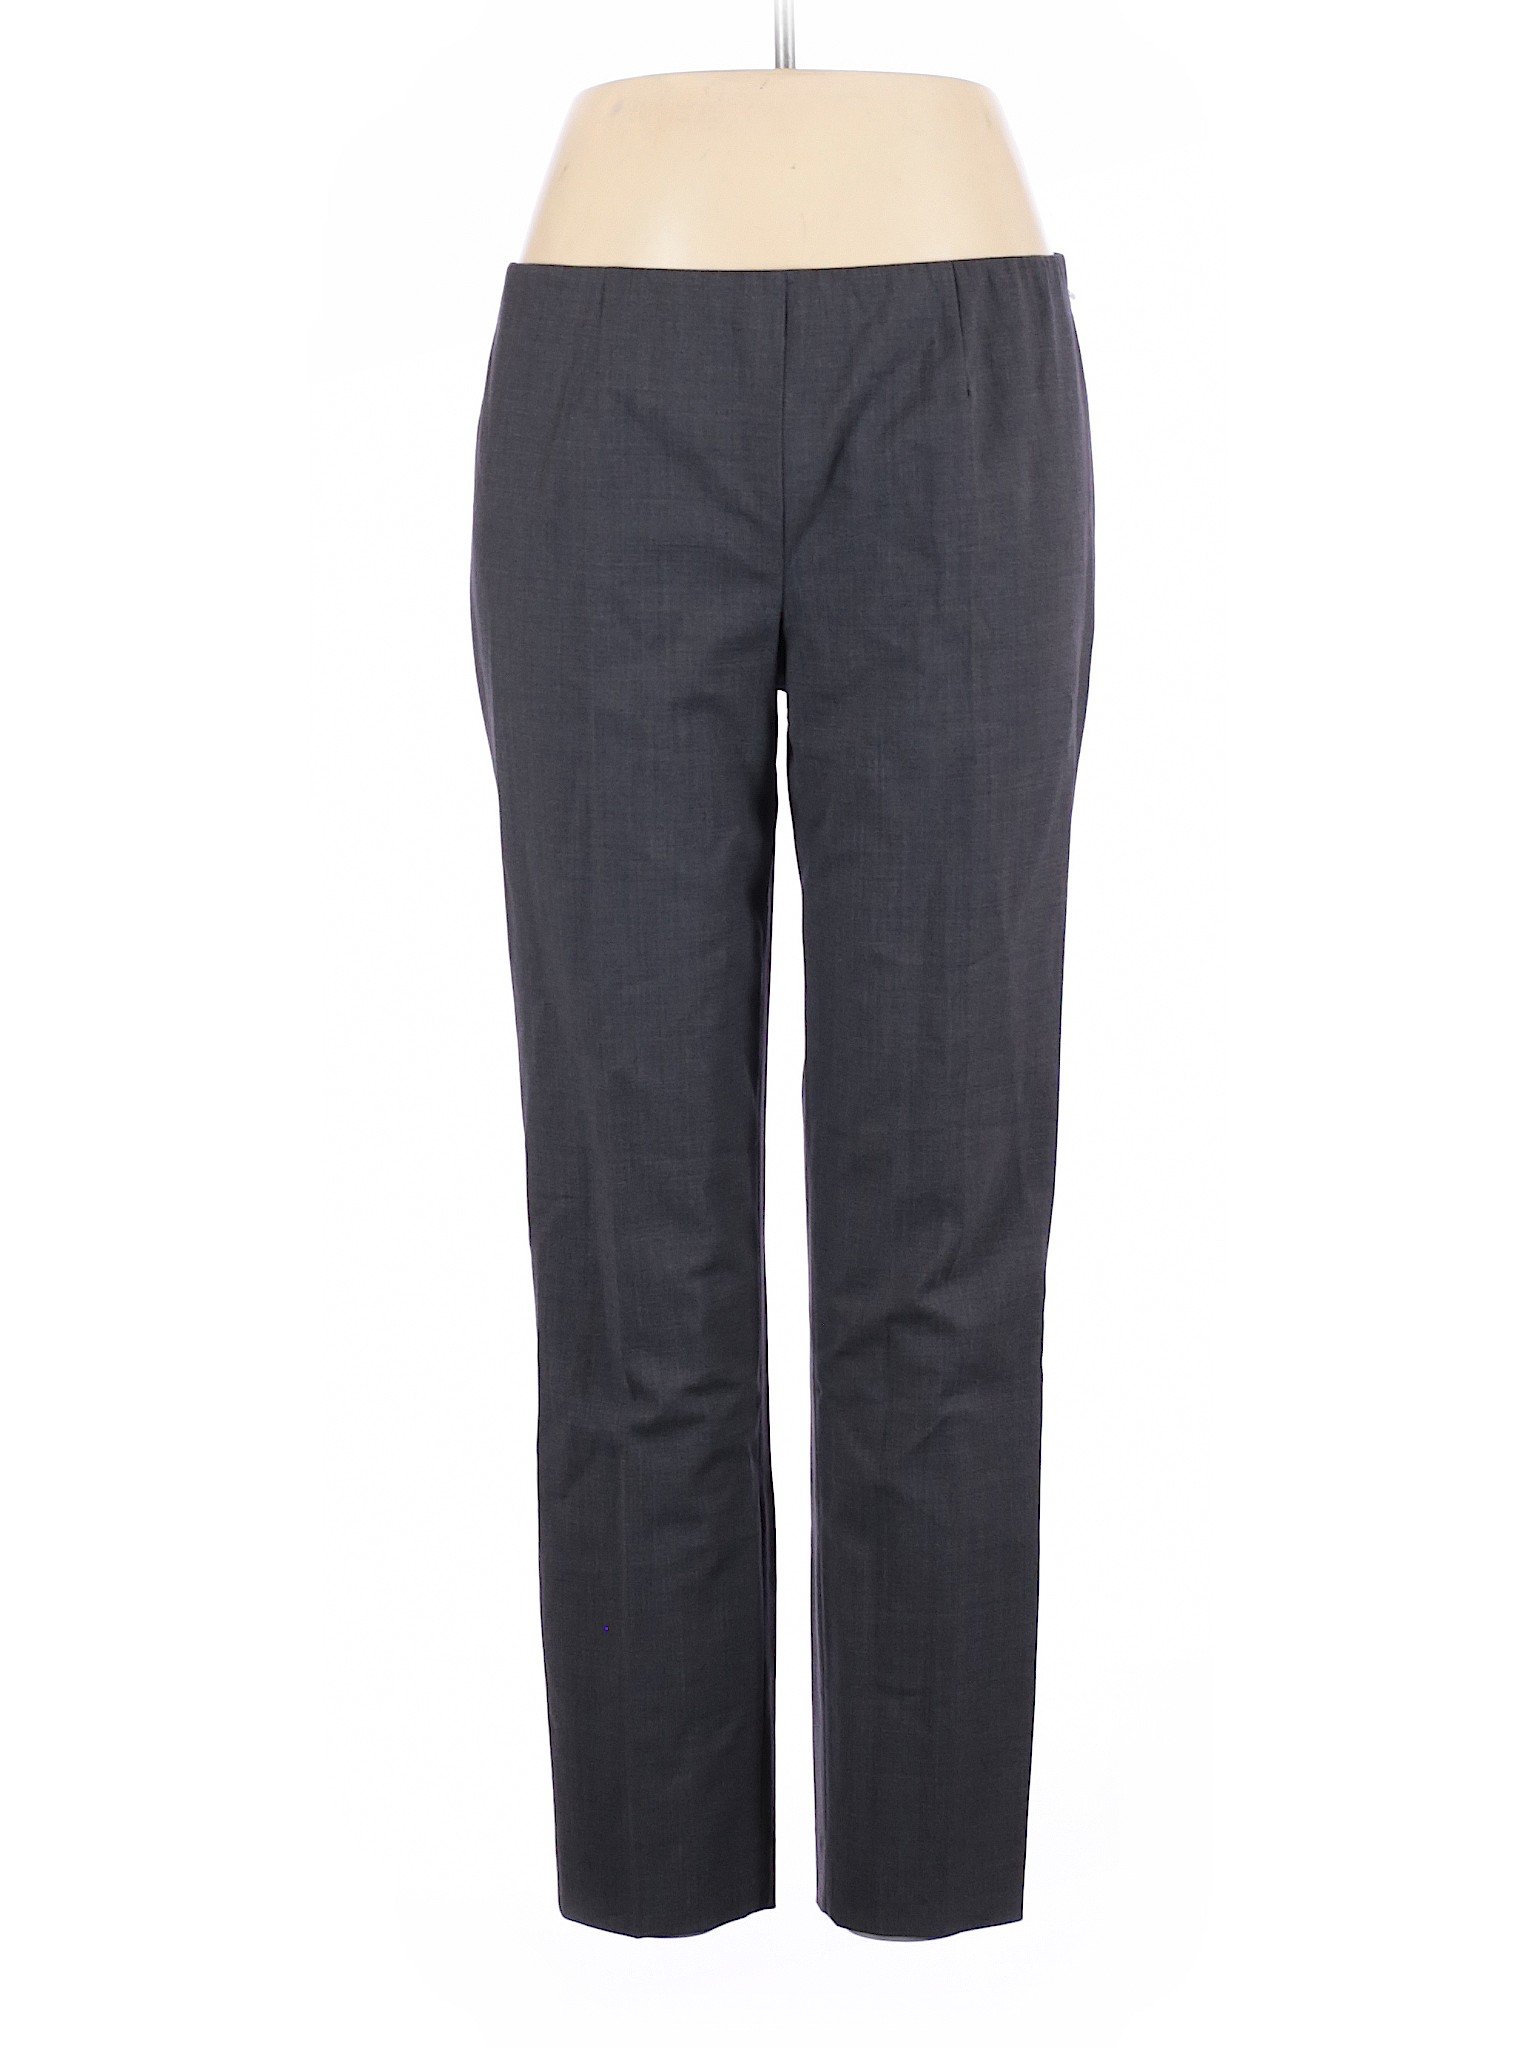 Brunello Cucinelli Women Gray Wool Pants 48 italian | eBay